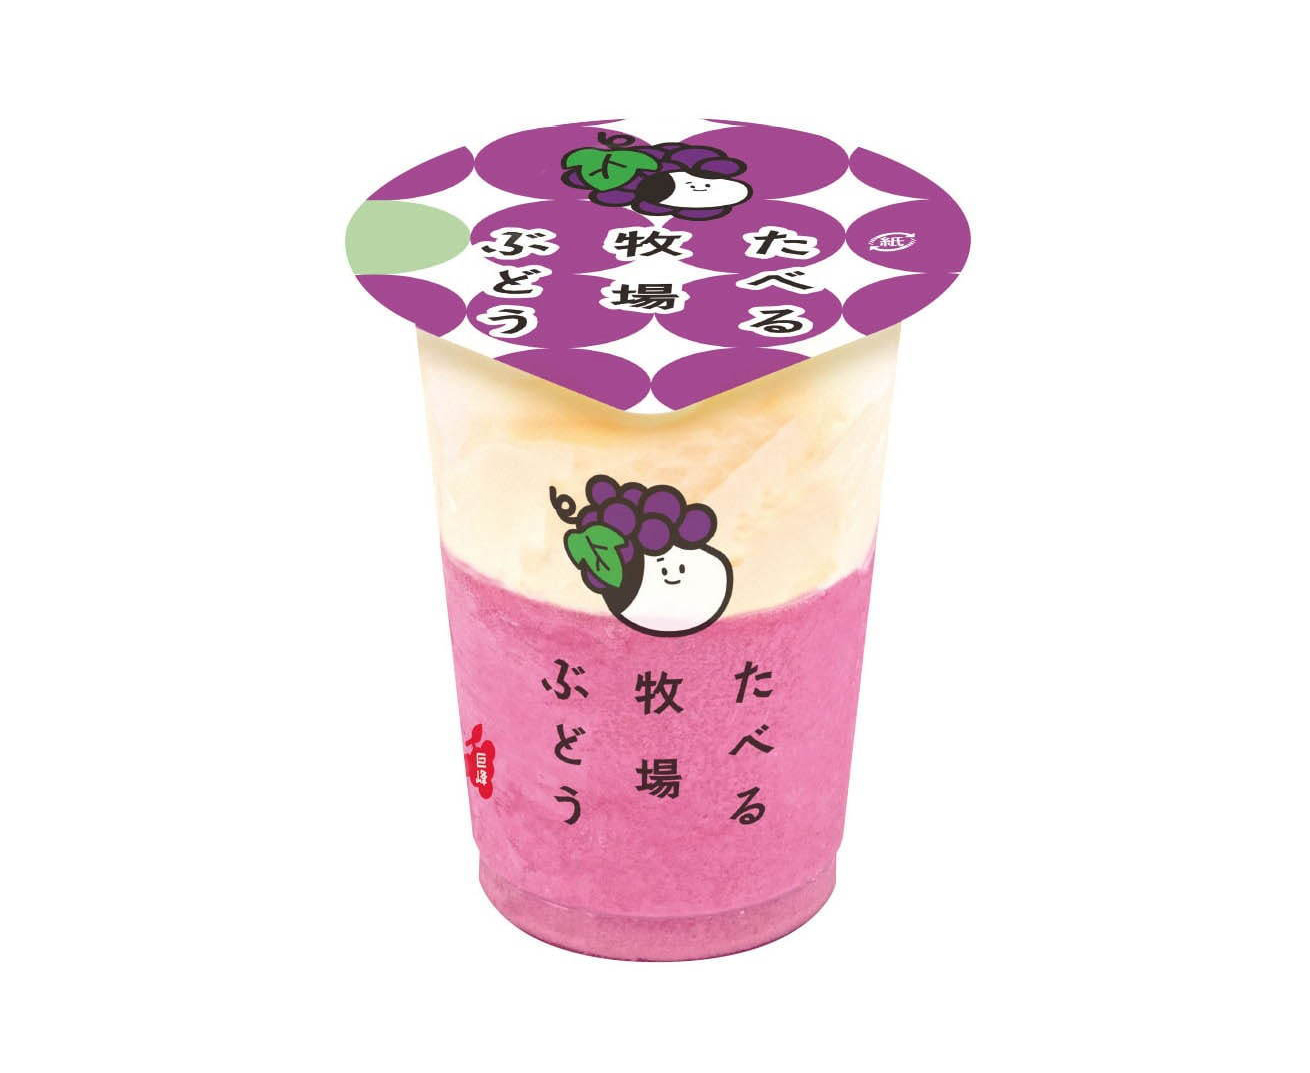 ミルクアイスと濃厚ぶどうジェラートの2層仕立て ファミマ たべる牧場ぶどう 新発売 Emo Miu エモミュー